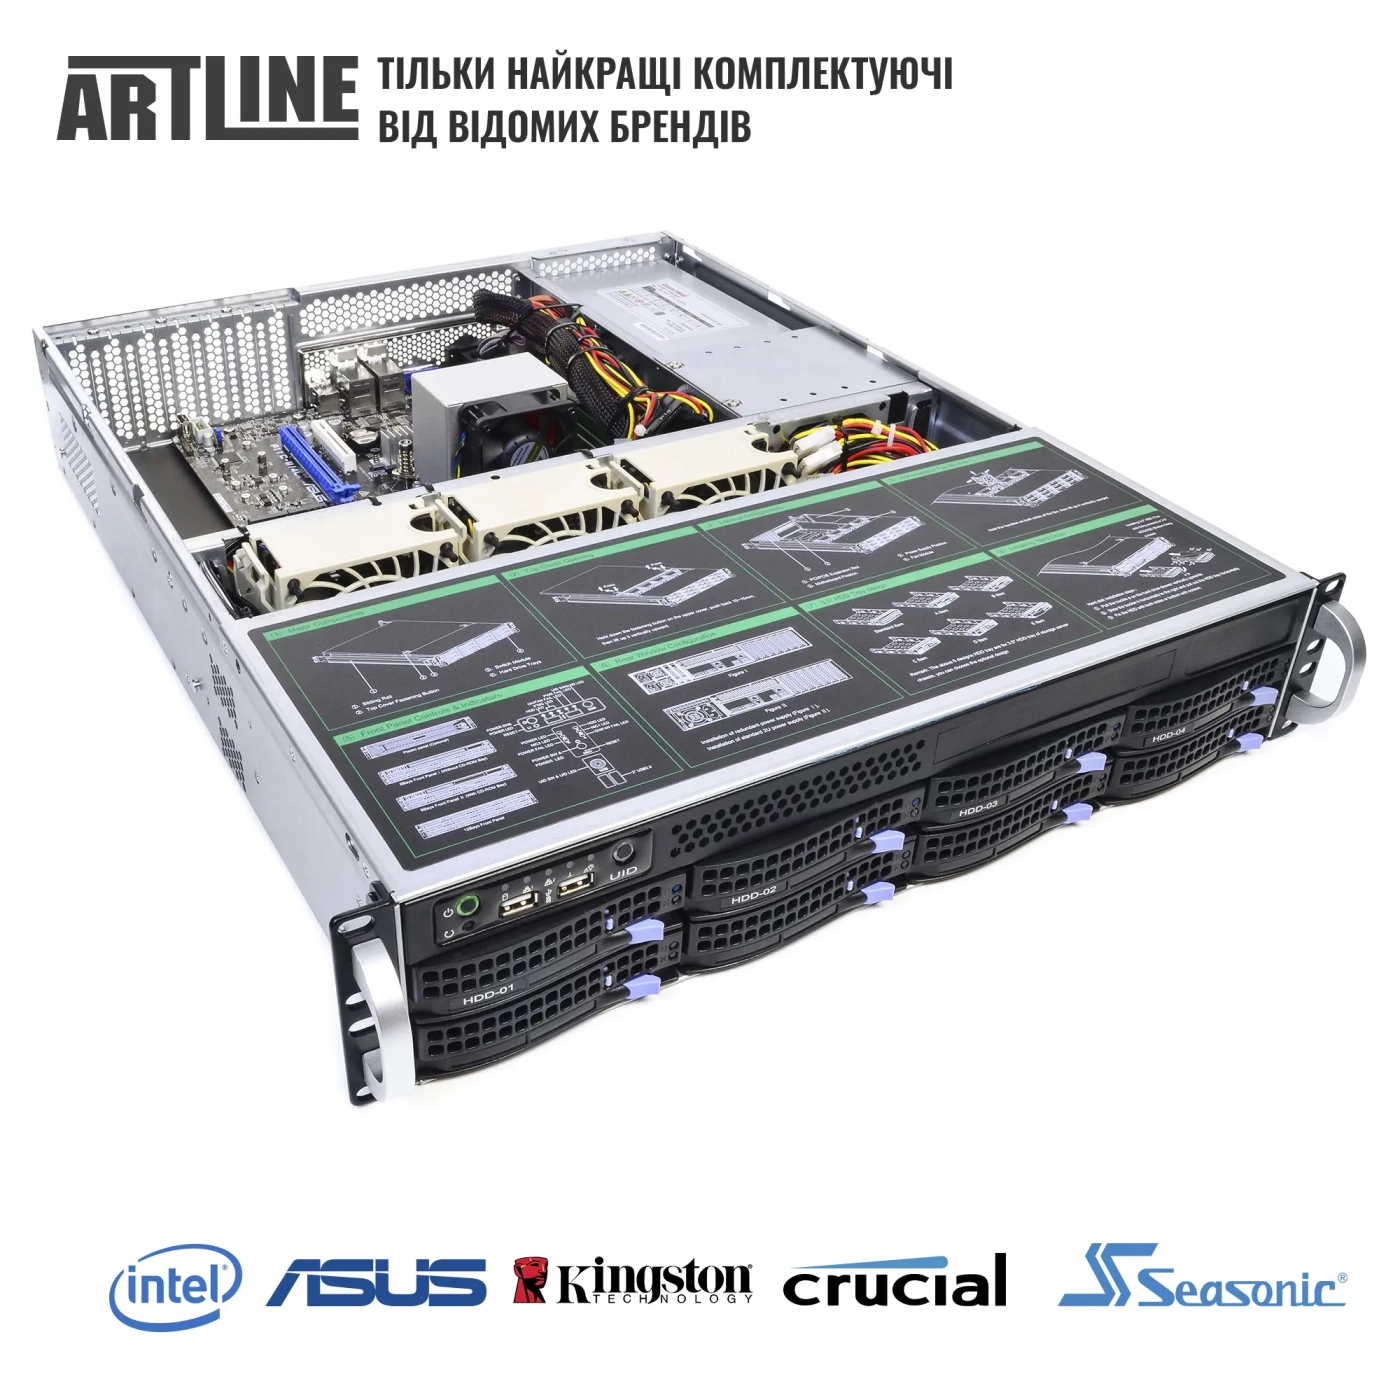 Купить Сервер ARTLINE Business R37 (R37v110) - фото 6